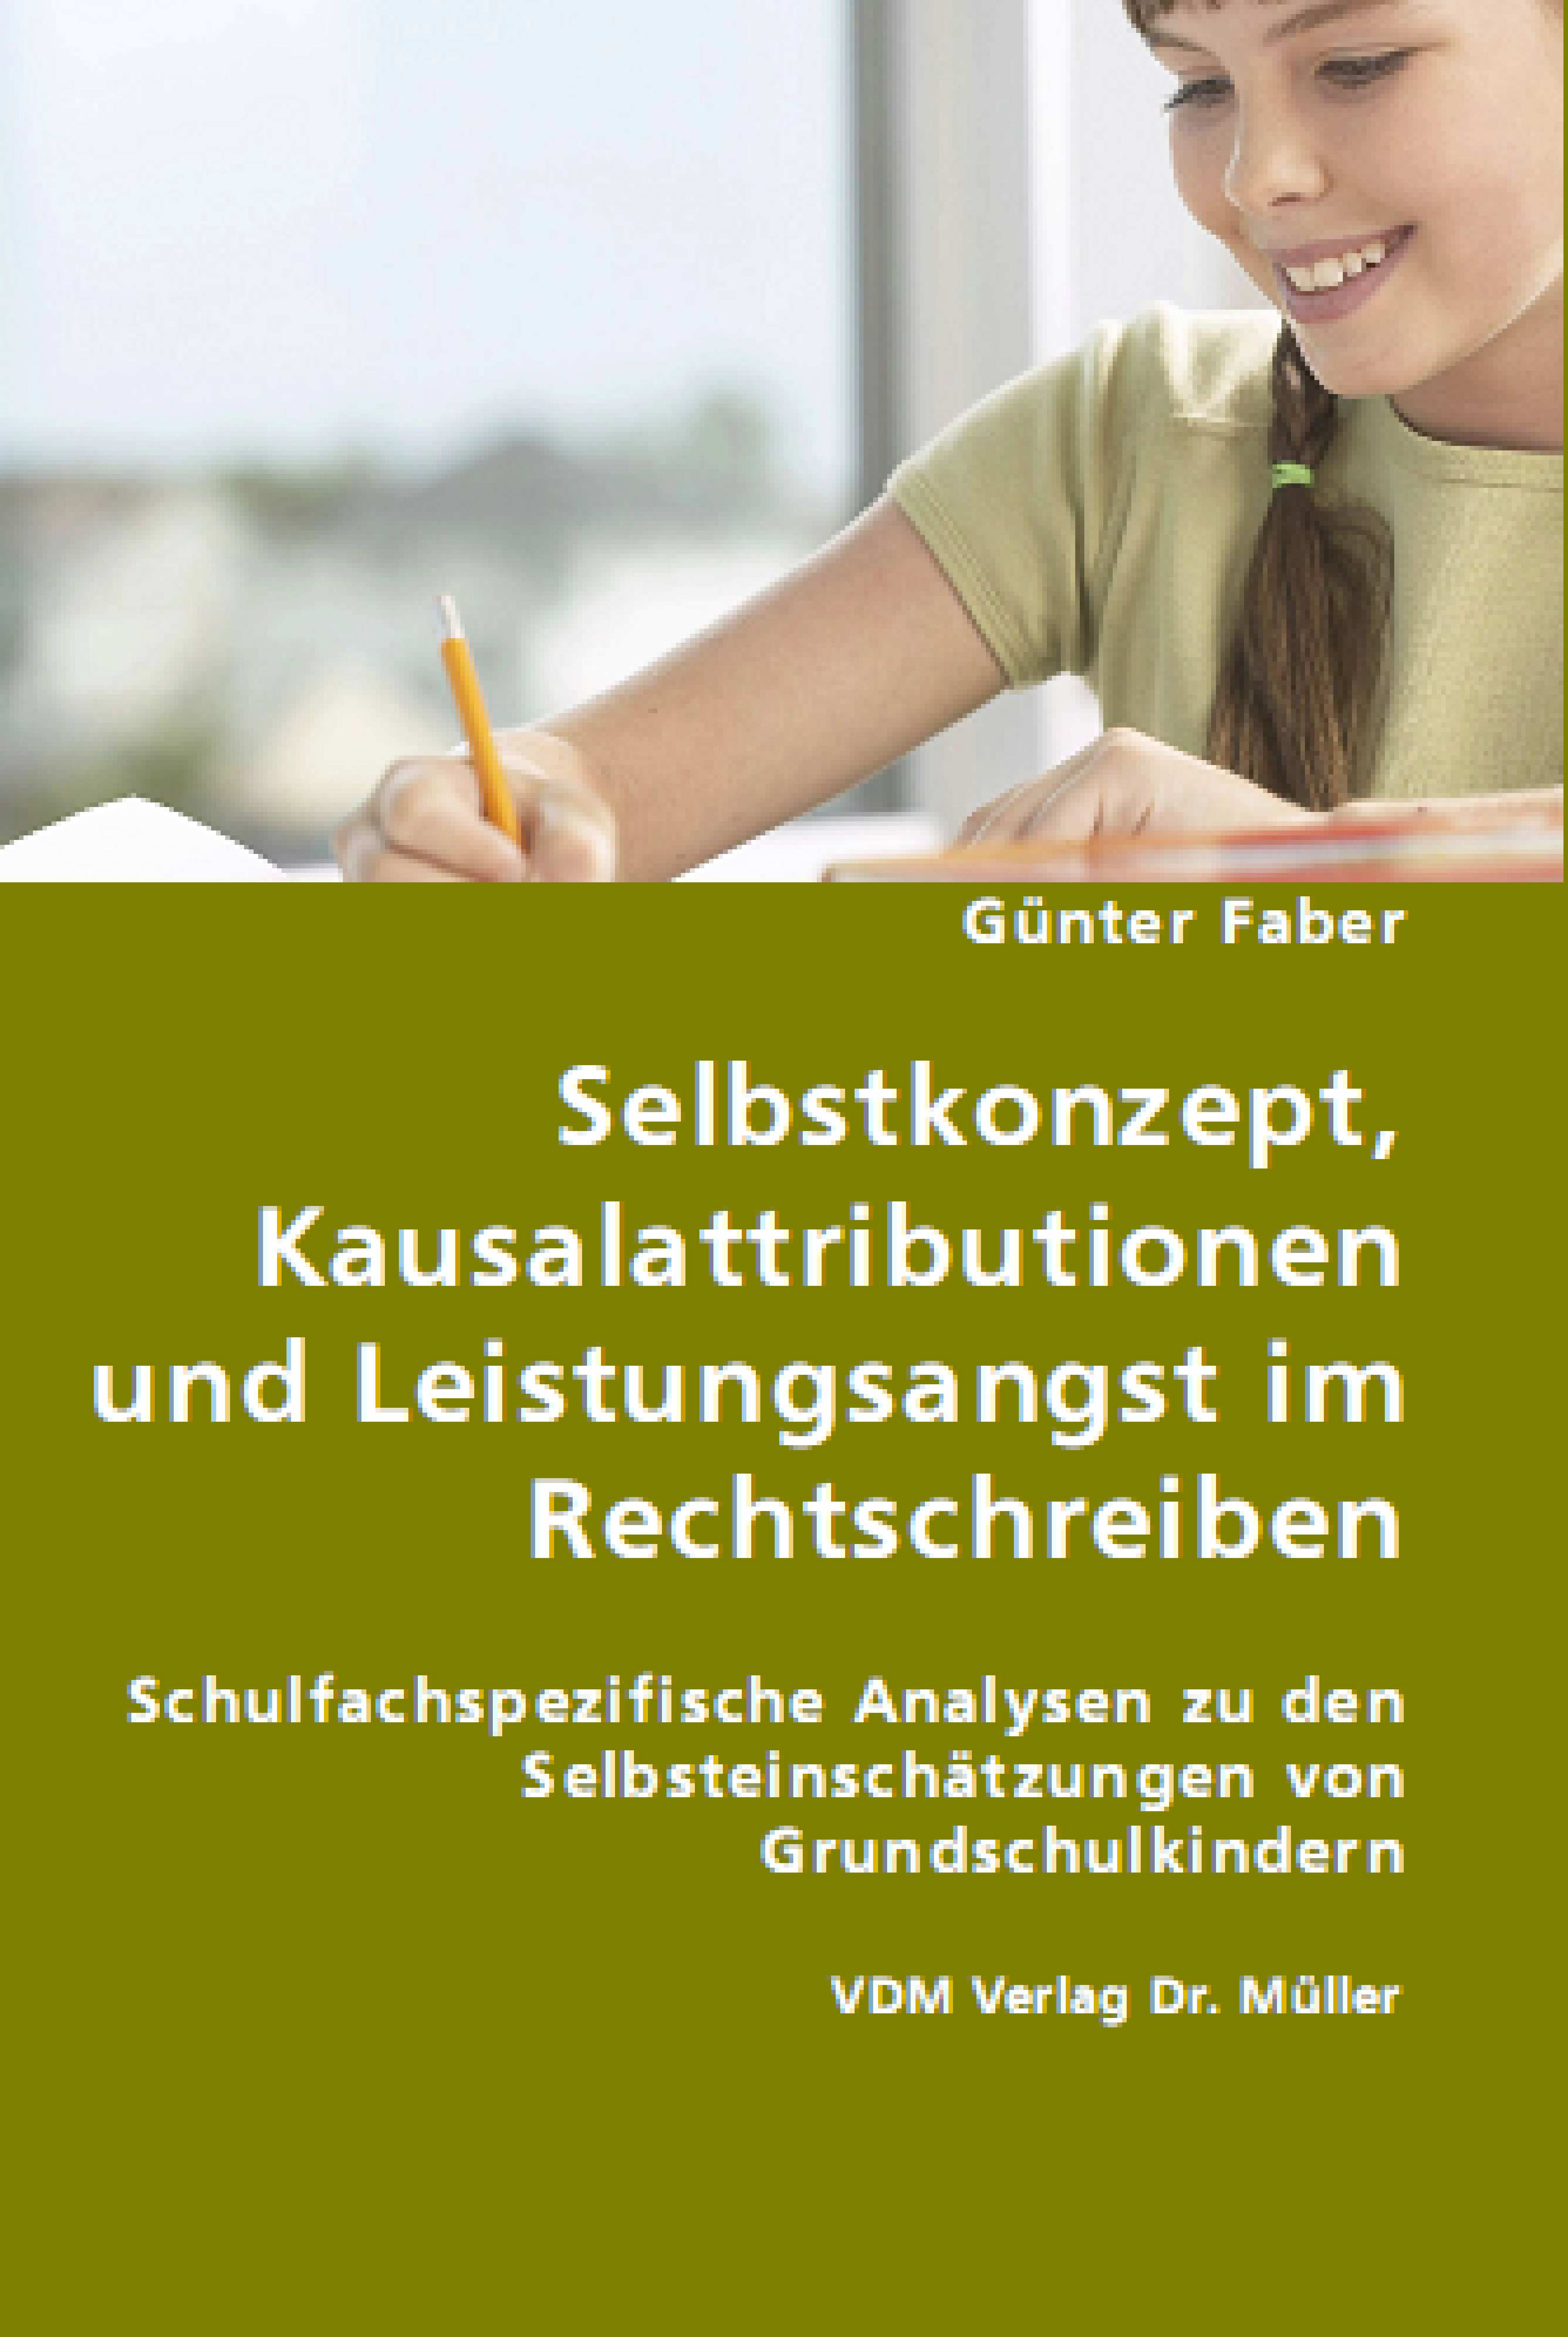 Kinder mit Lese-Rechtschreibstörungen: Selbstwertgefühl und Integrative Lerntherapie. Kindheit und Entwicklung, 12, 231-242. Skaalvik, E.M. & Valås, H. (1999).